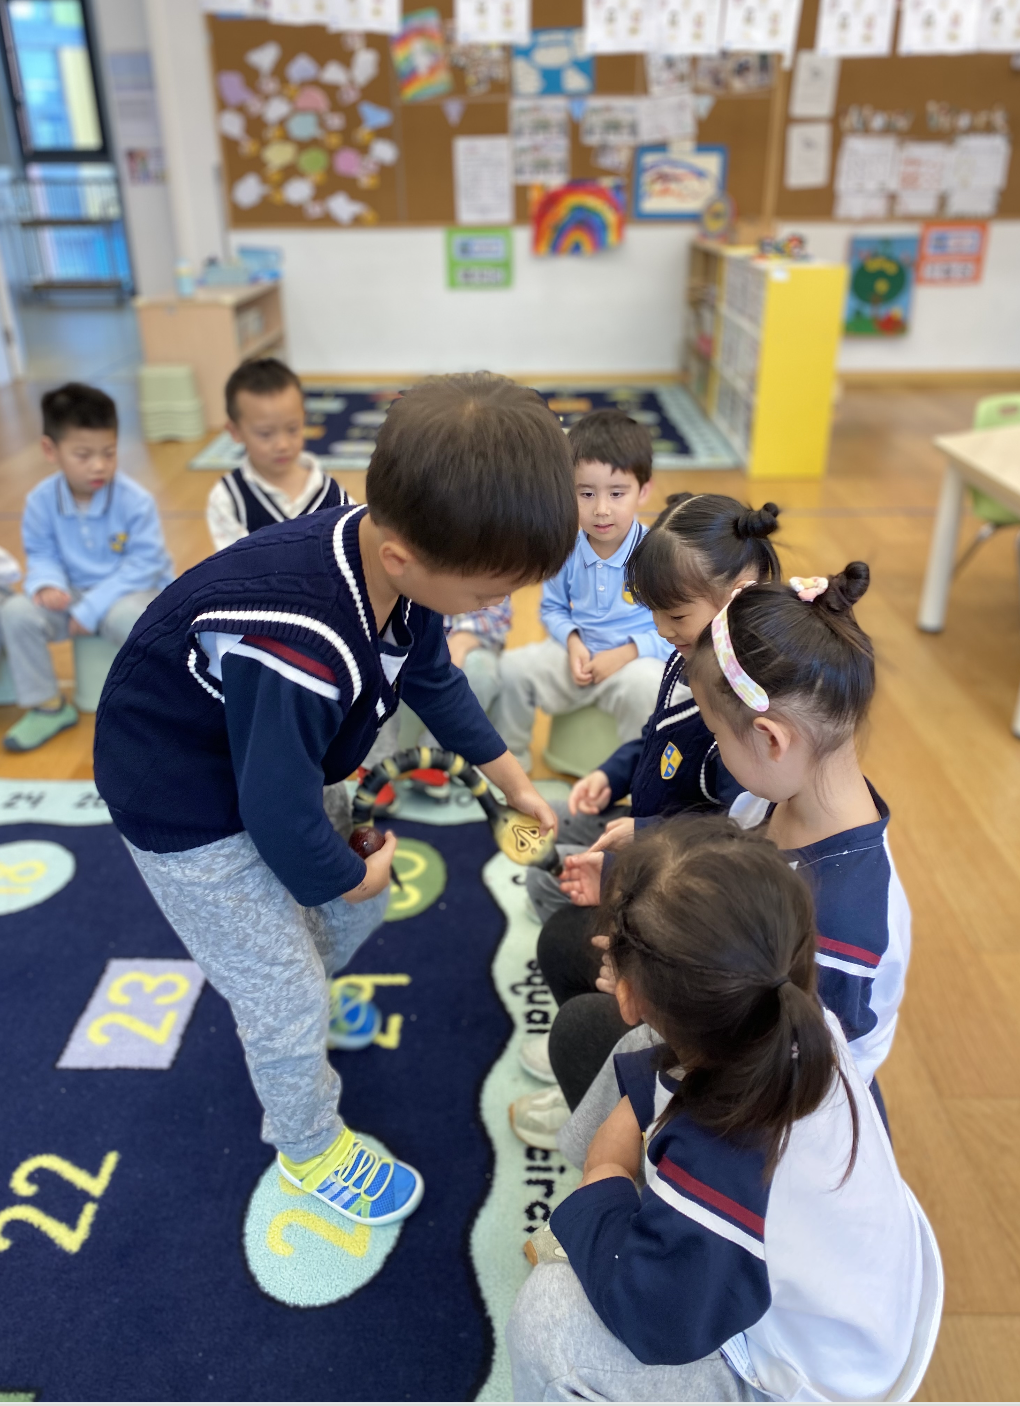 Action in CISK Kindergarten